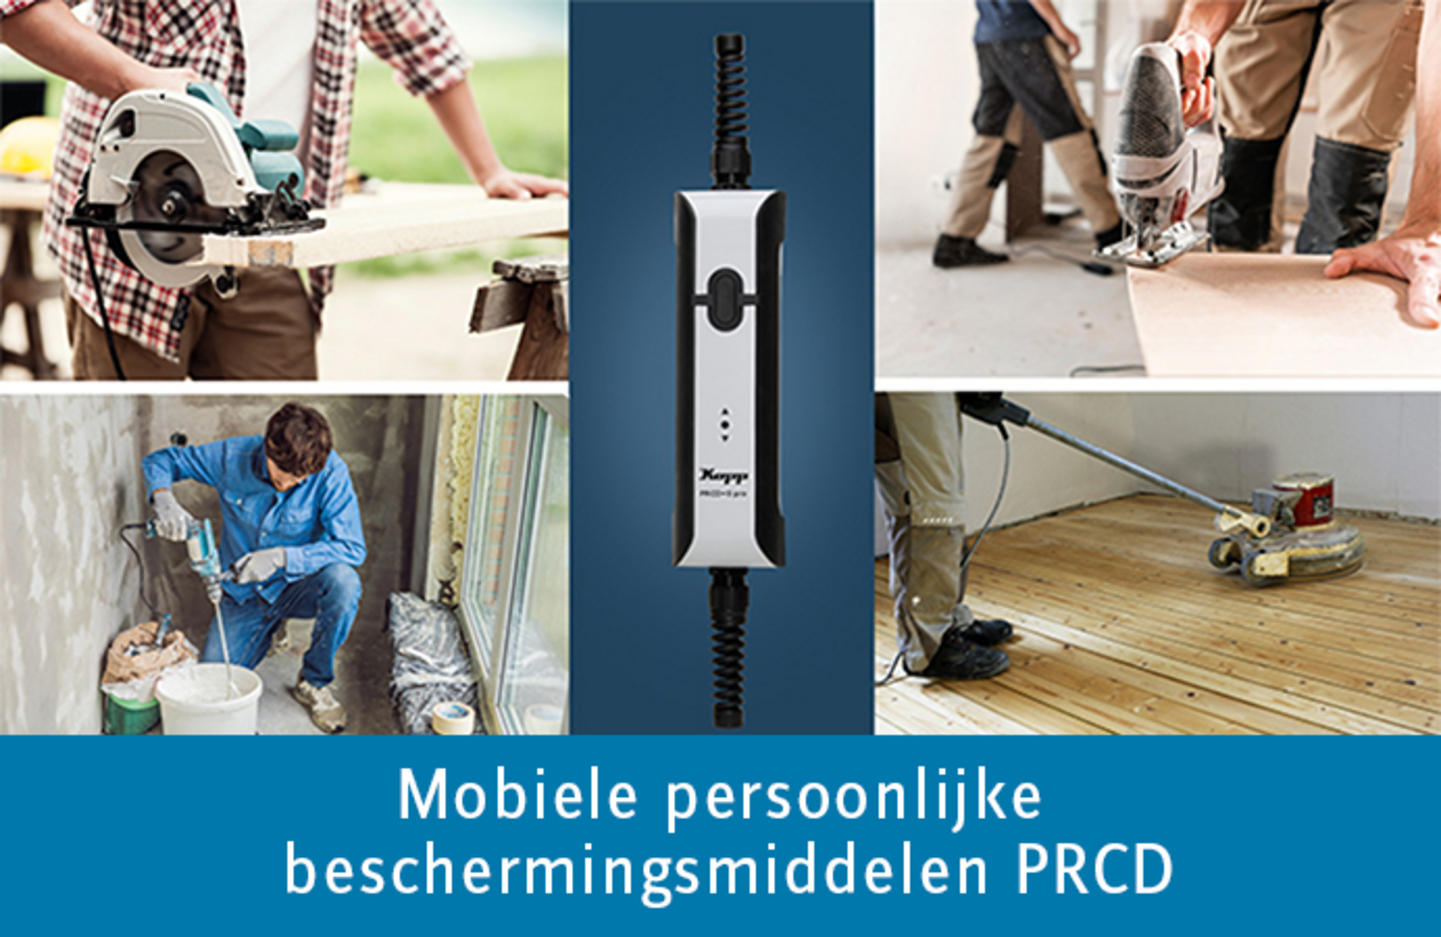 Mobiele persoonlijke beschermingsmiddelen PRCD